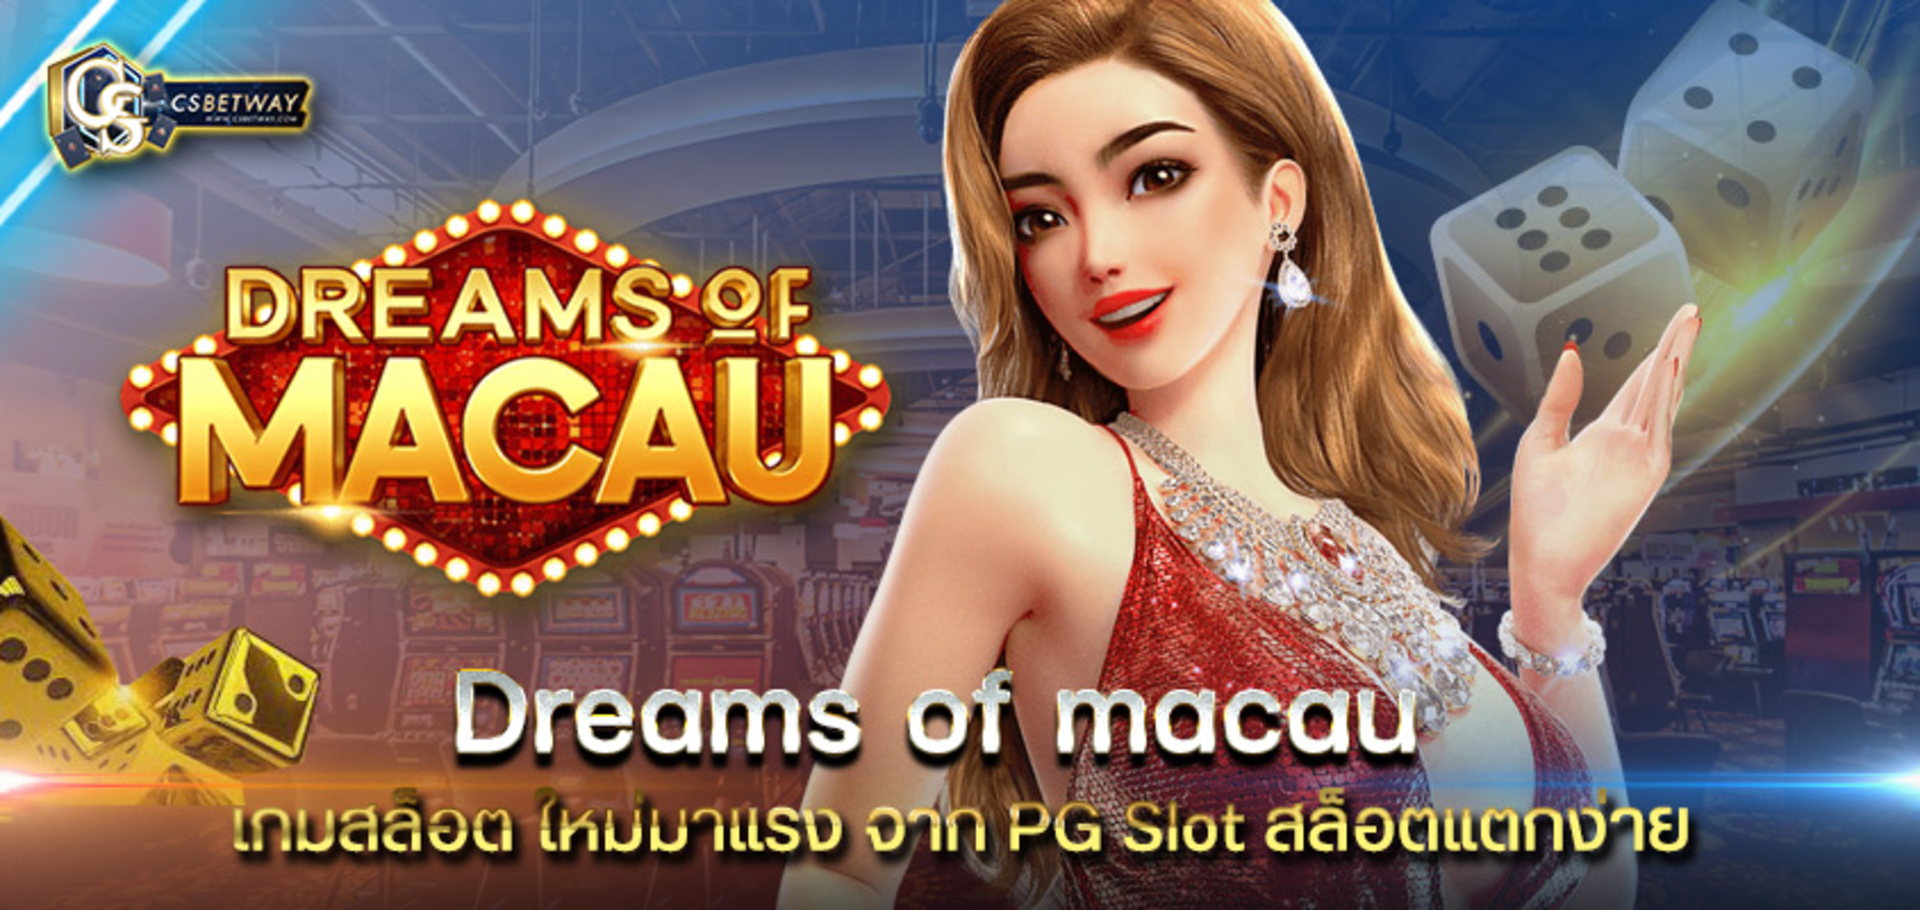 เกมสล็อตออนไลน์ Dreams of Macau สล็อตแนวคาสิโน ใหม่ล่าสุด จากค่าย PG SLOT เล่นง่ายได้ ได้เงินจริง ทดลองได้แล้ววันนี้ สล็อตพีจี PGสล็อต